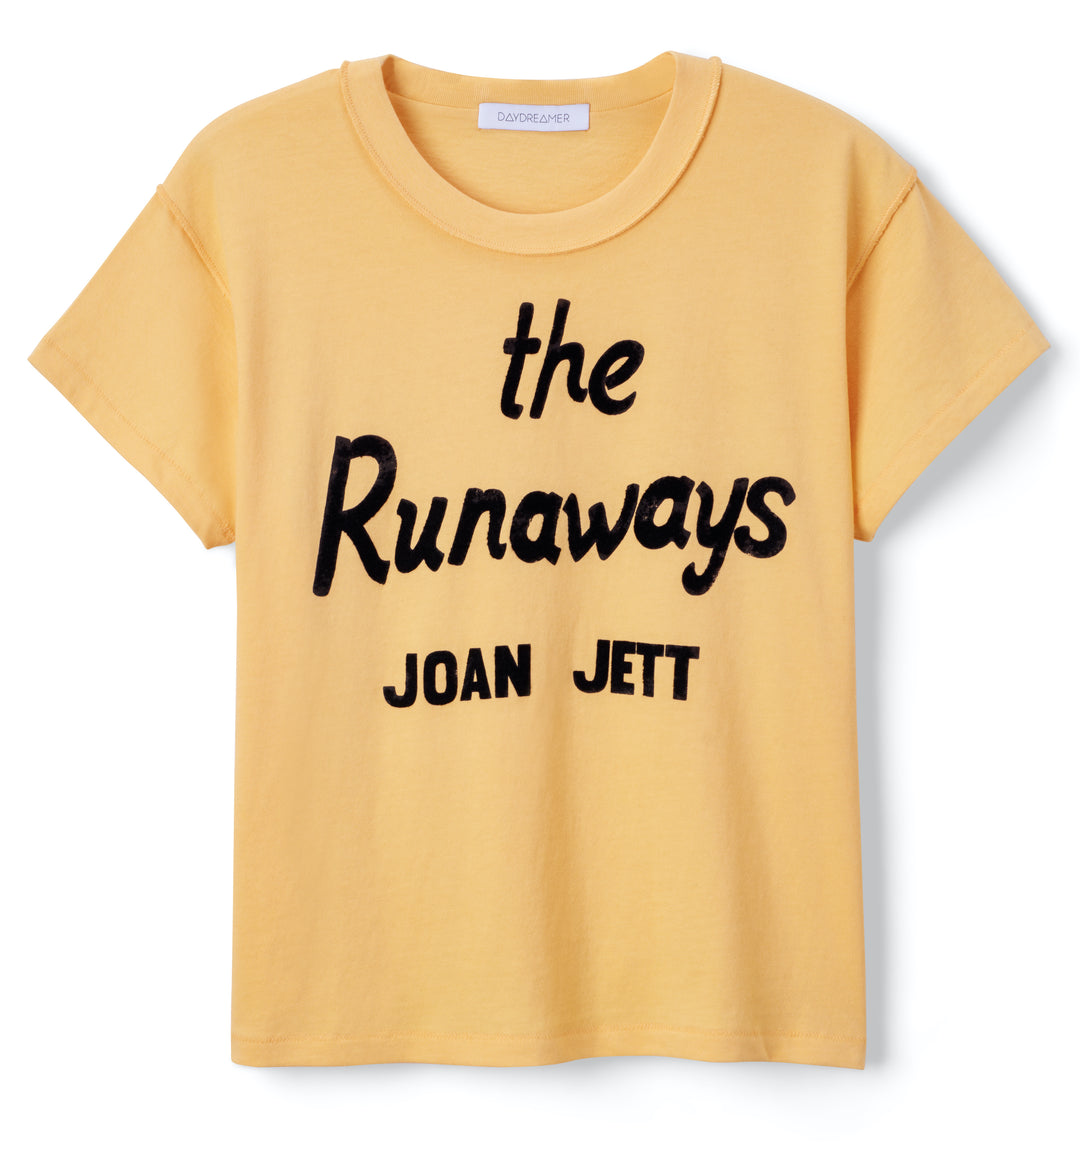 JOAN JETT RUNAWAYS - Kingfisher Road - Online Boutique